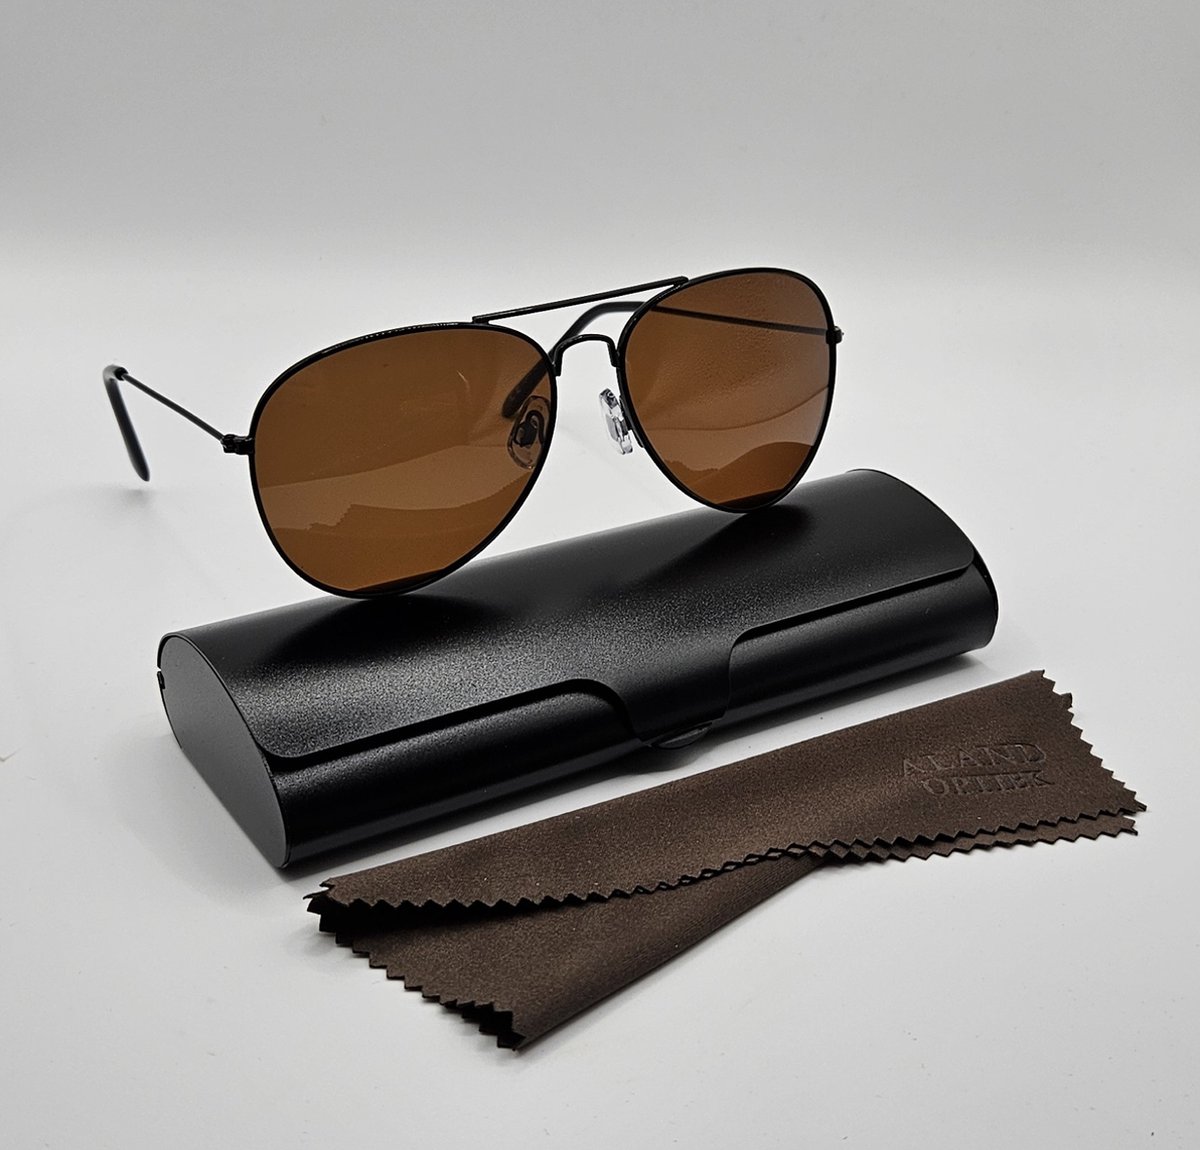 Unisex zonnebril gepolariseerd / pilotenbril / bril met harde brillenkoker en doekje - UV400 cat 3 - bril met brillenkoker / bruine lenzen - PZ2421 Geweldig cadeau / Aland optiek